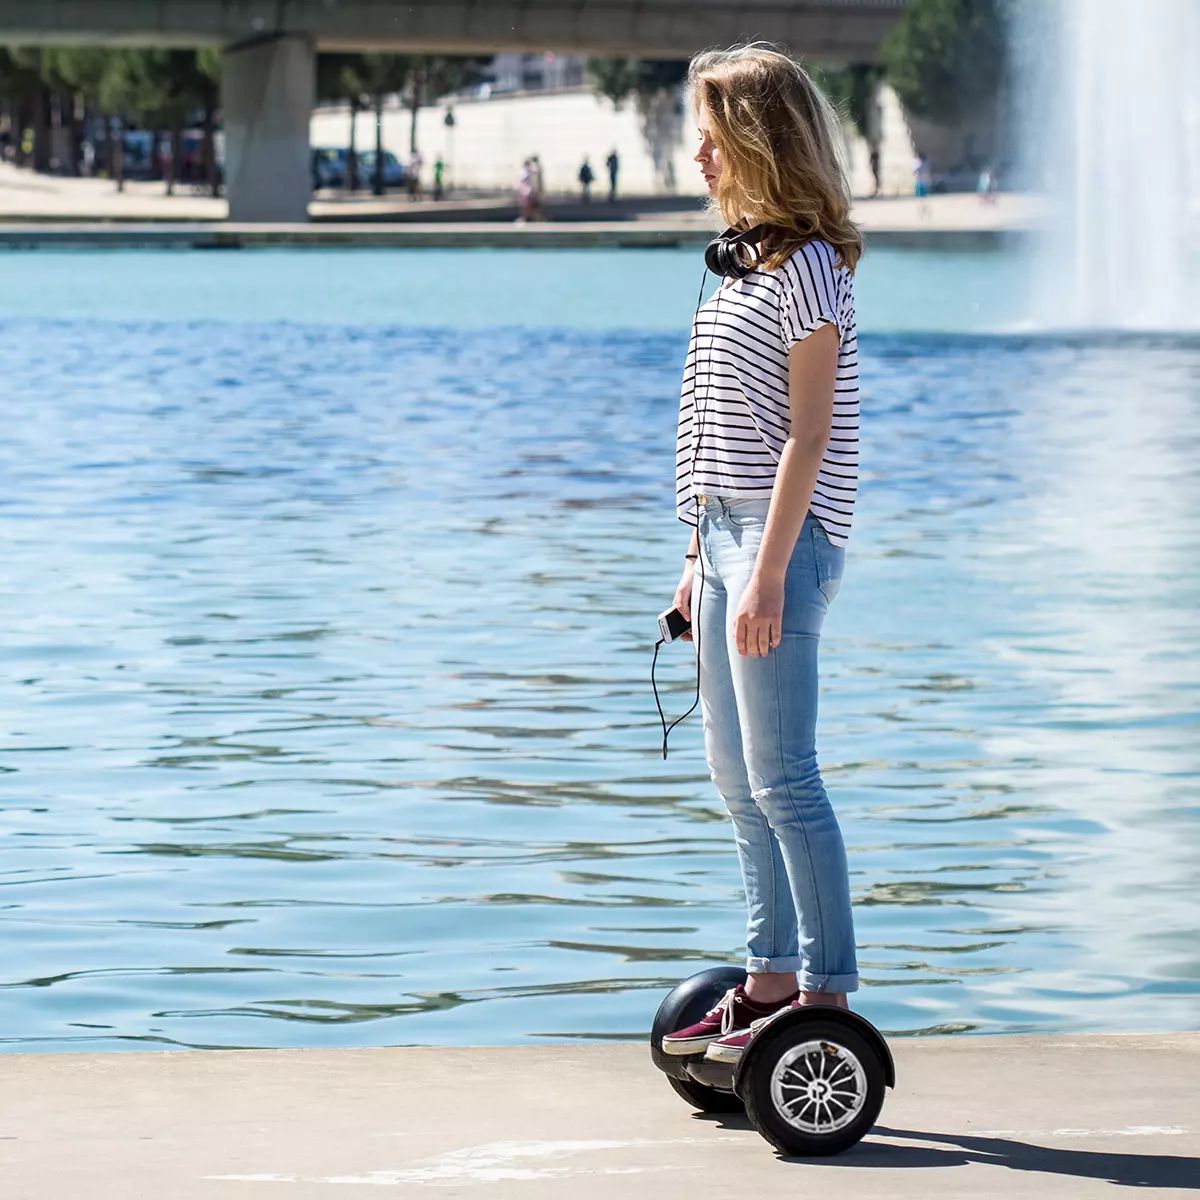 Mädchen fährt mit dem Self-Balance-Scooter am Strand neben dem Wasser entlang